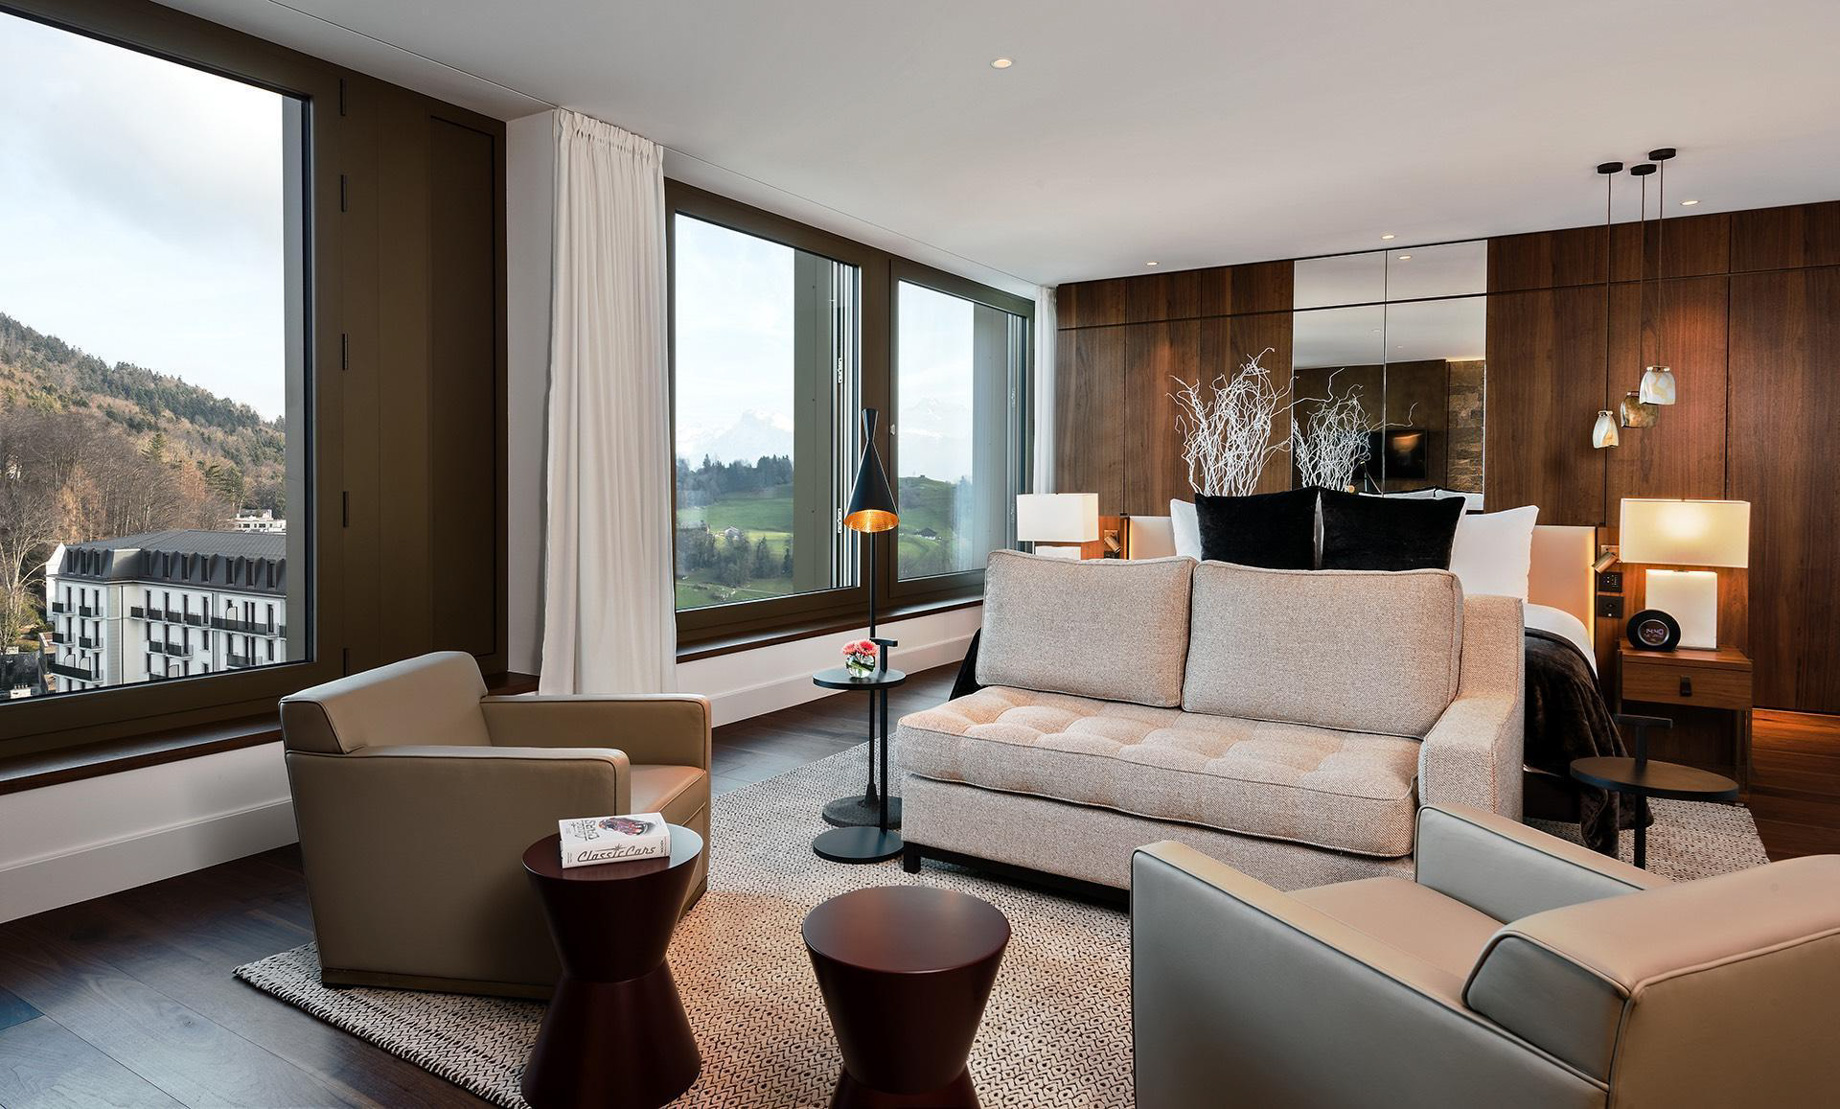 Burgenstock Hotel & Alpine Spa - Obburgen, Switzerland - Penthouse Suite Bedroom